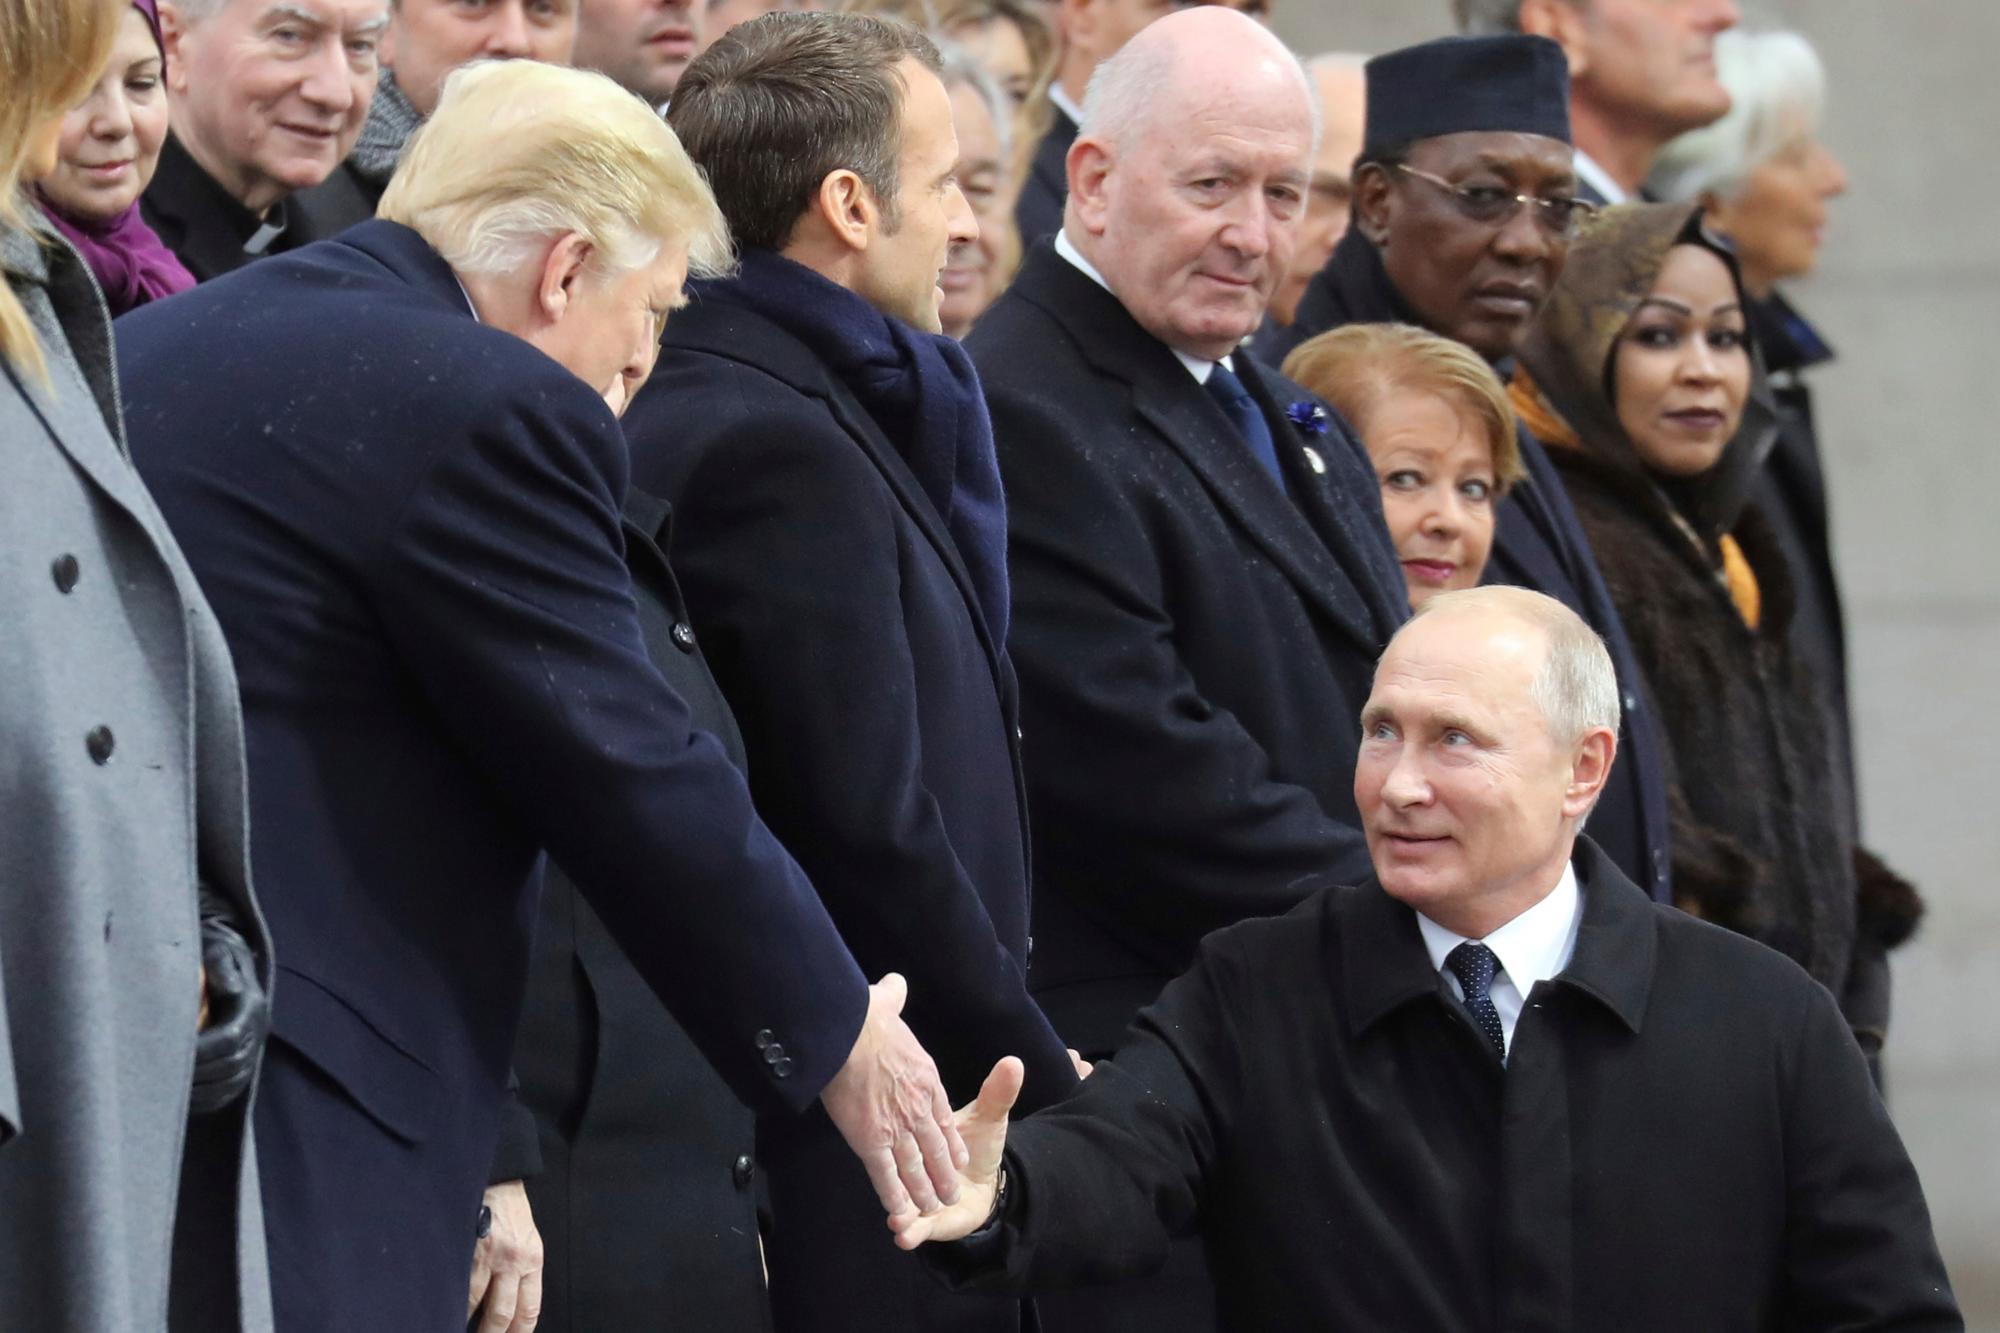 El presidente ruso Vladimir Putin le da la mano al presidente de los Estados Unidos, Donald Trump, cuando llega para asistir a una ceremonia en el Arco del Triunfo de París.